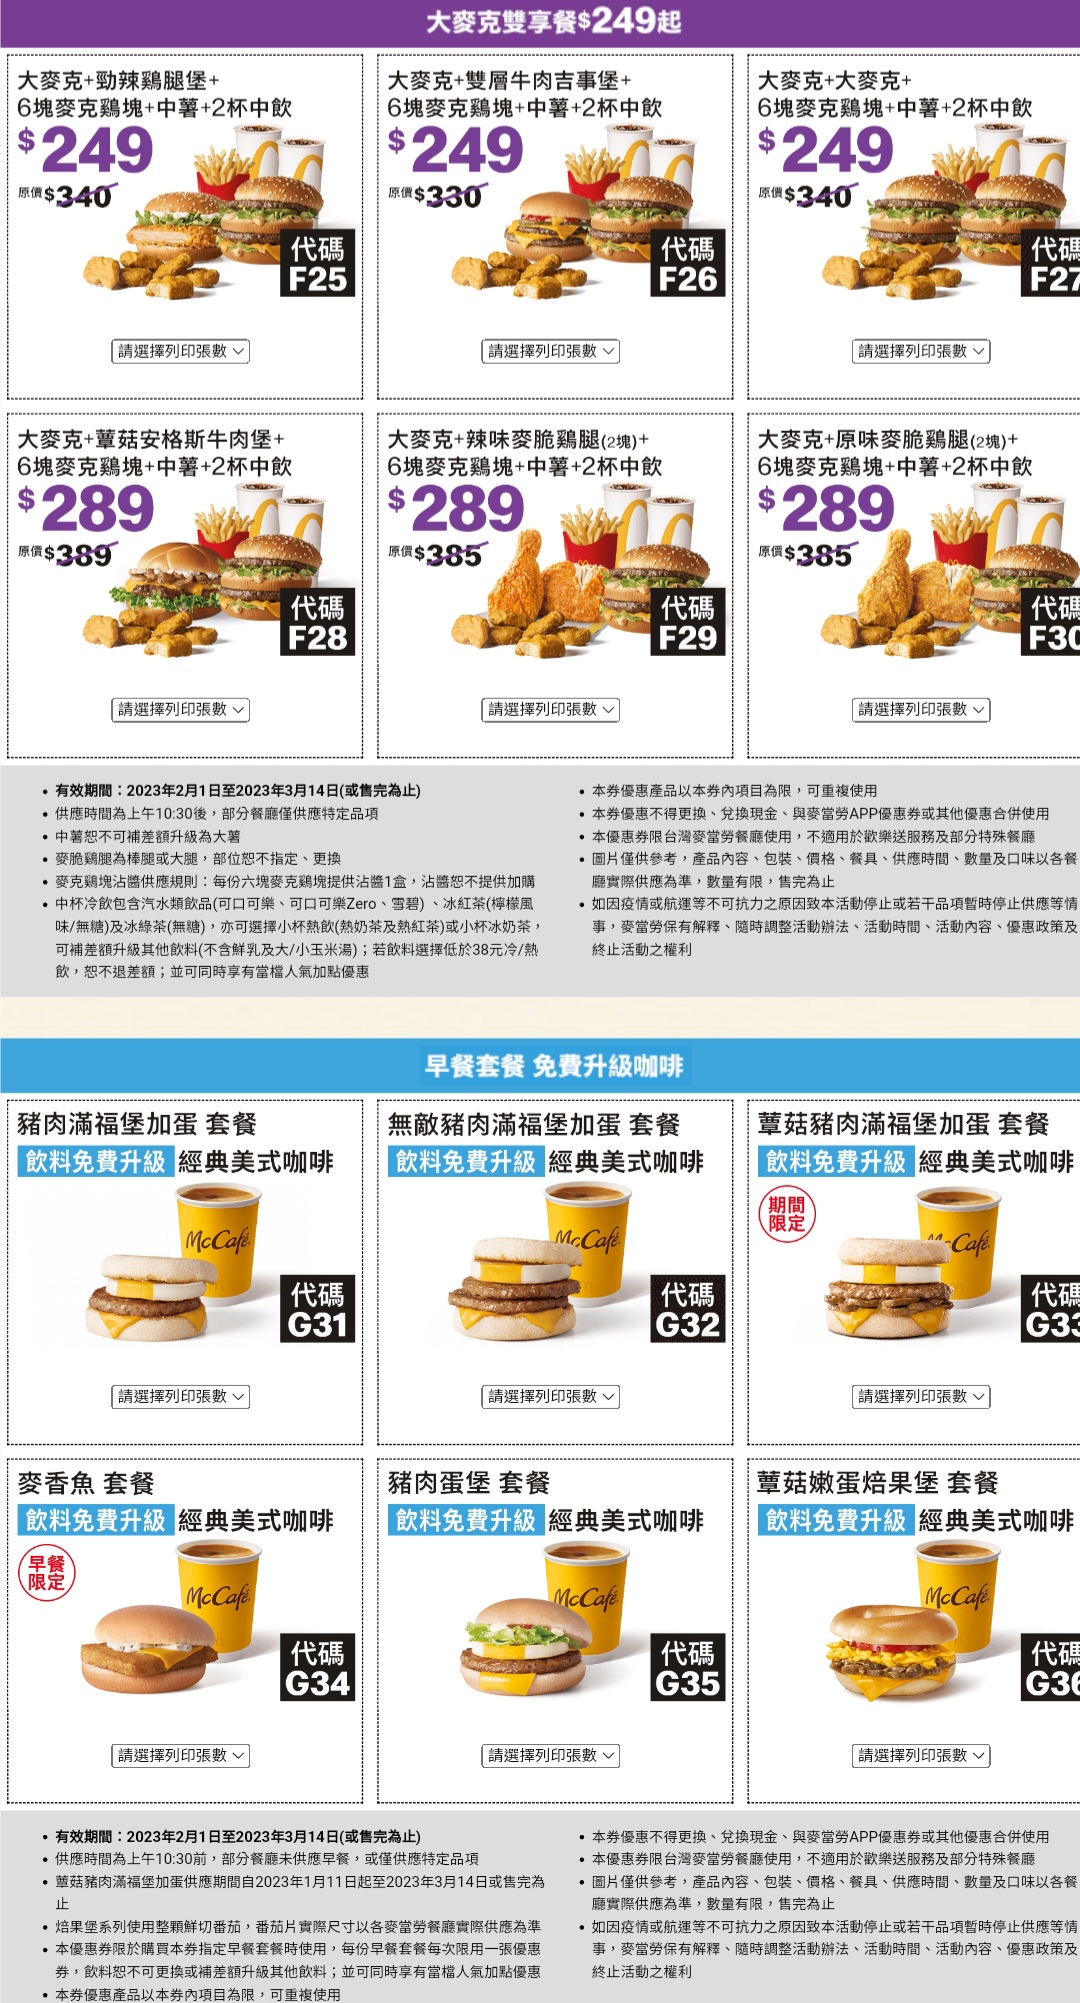 2023麥當勞優惠券下載 「加1元多1件、超爽大餐101元起」2/1~3/14長達42天，現省2869元！